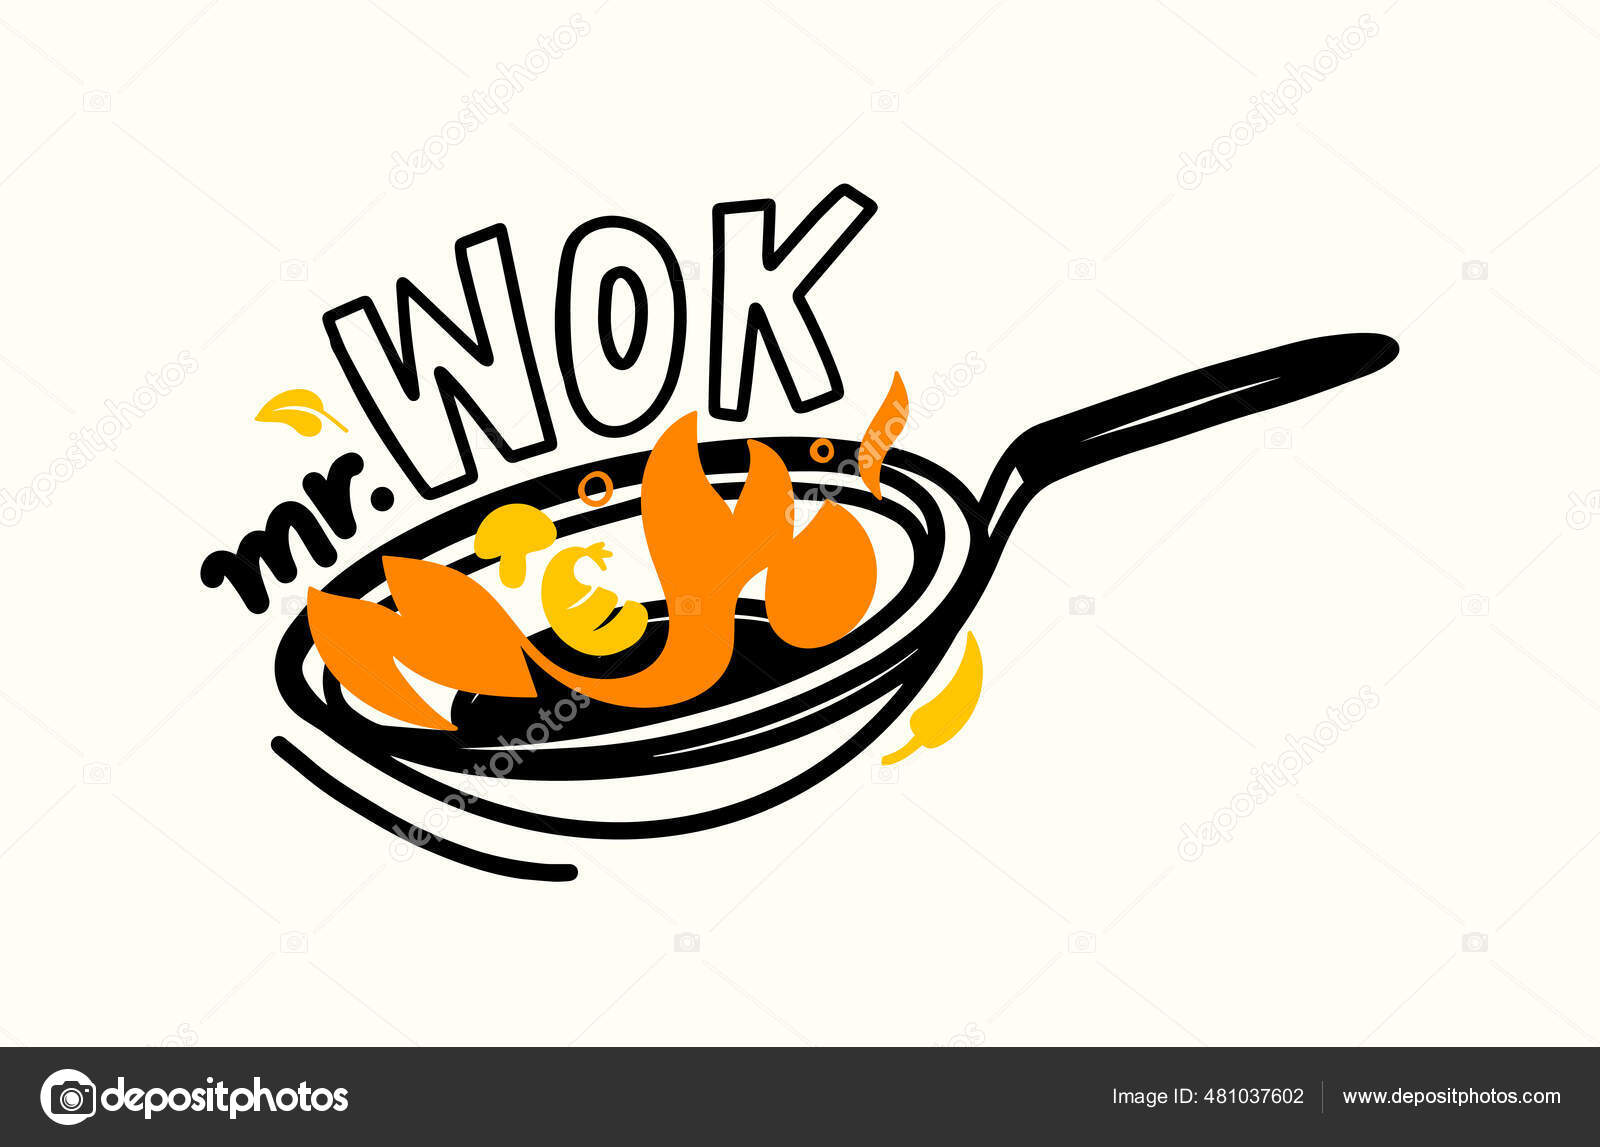 Вок н. Логотип сковородка. Баннер Wok. Логотип китайской кухни. Кухня логотип на сковородке.